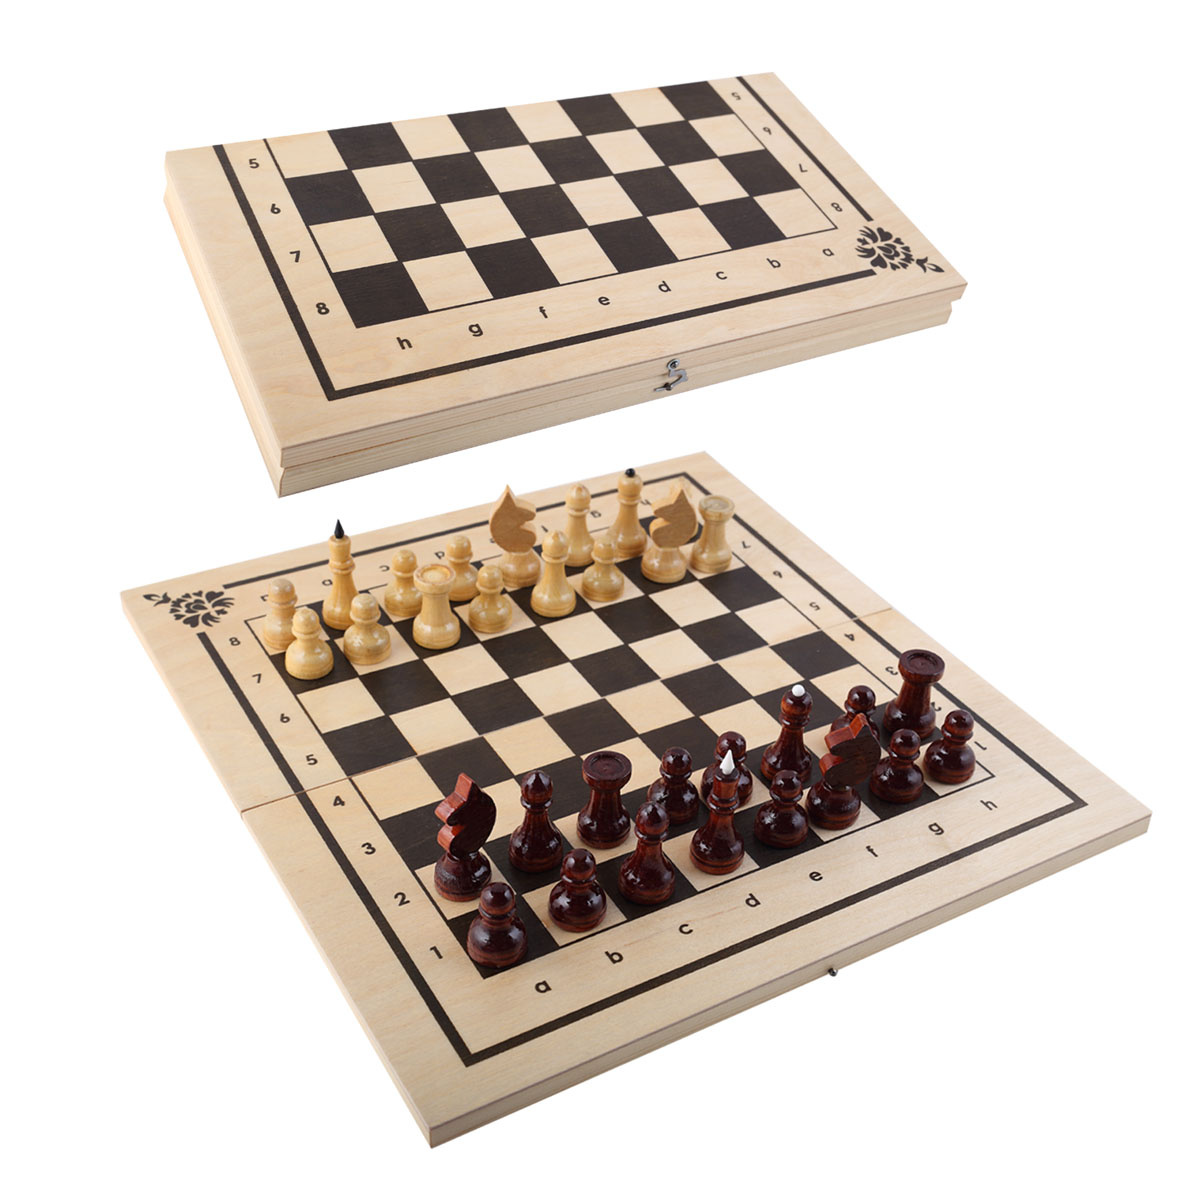 Игра ИН-7510 Нарды, шашки, шахматы 400х10мм - Ульяновск 